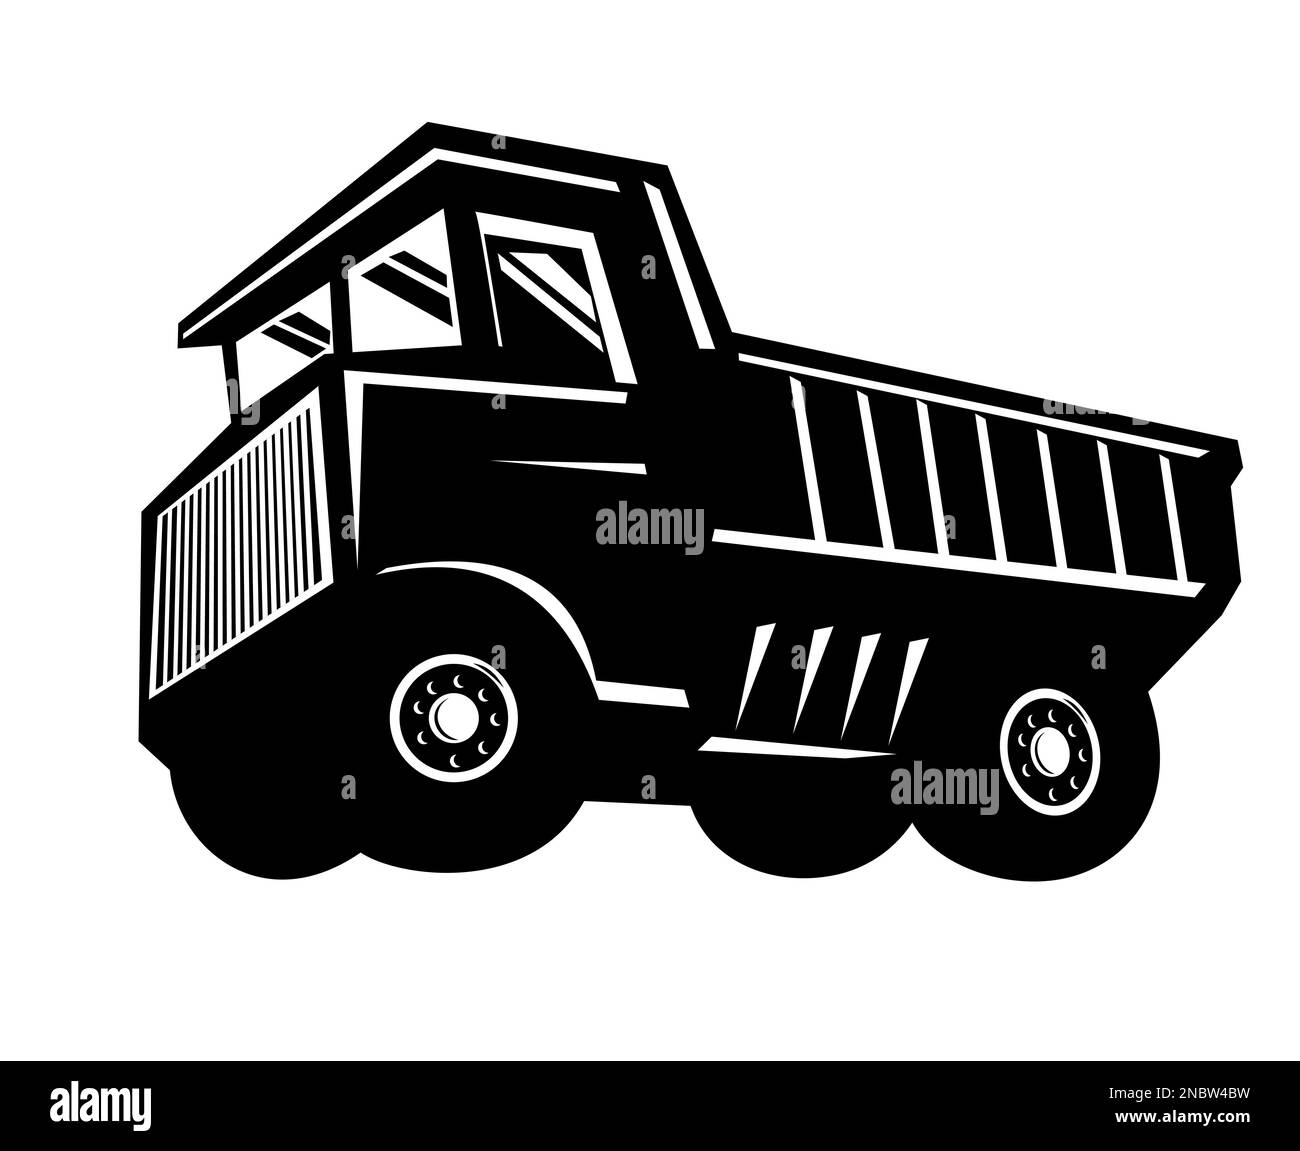 Ilustración de un camión de acarreo o camión de descarga rígido utilizado para la minería y entornos de construcción de servicio pesado visto desde el estilo retro lateral de la madera. Foto de stock